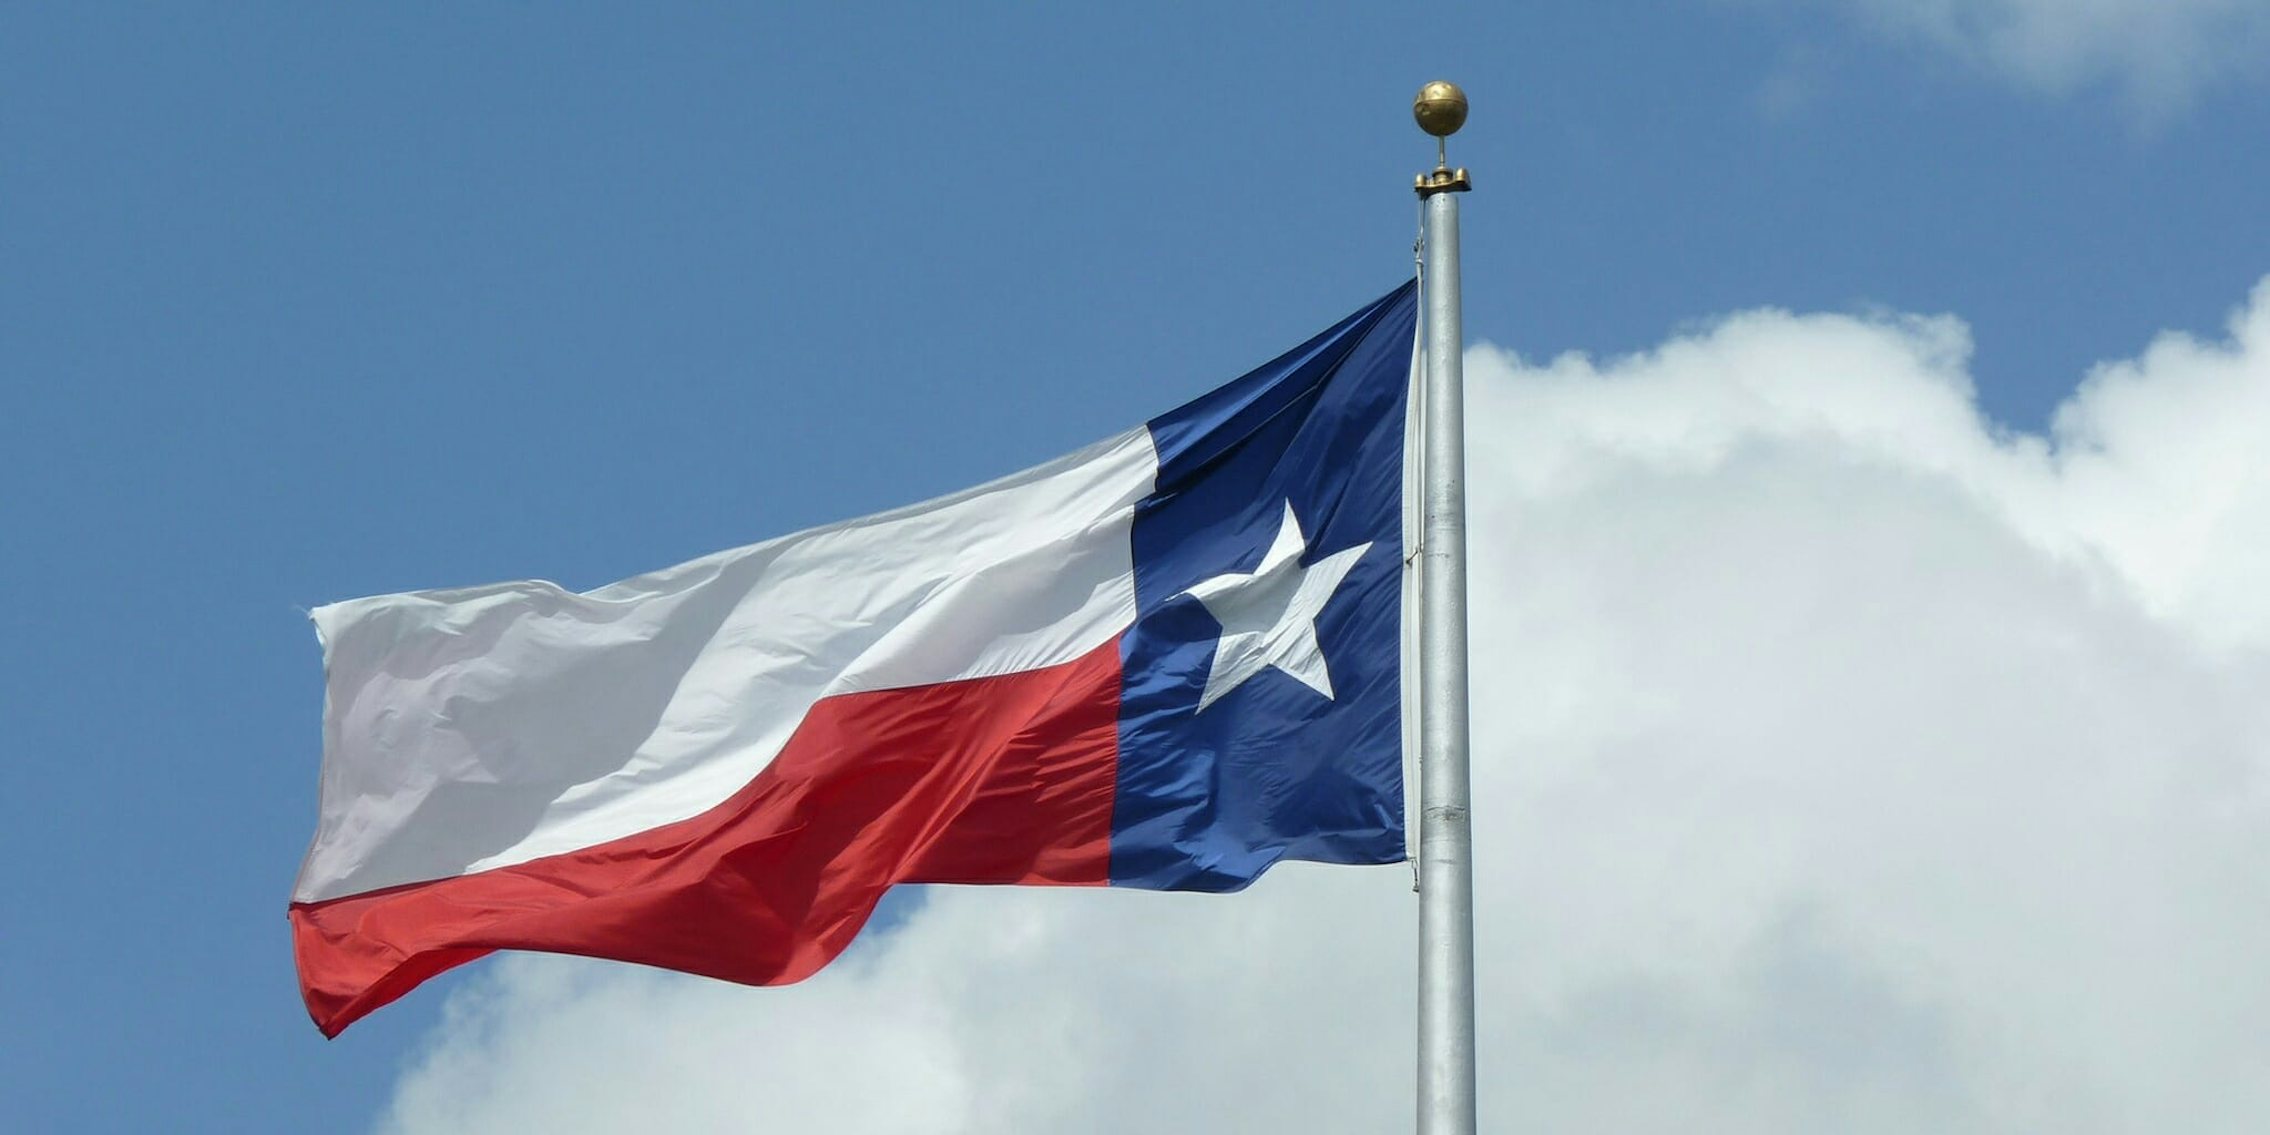 The Texas flag on a pole in a cloudy sky.